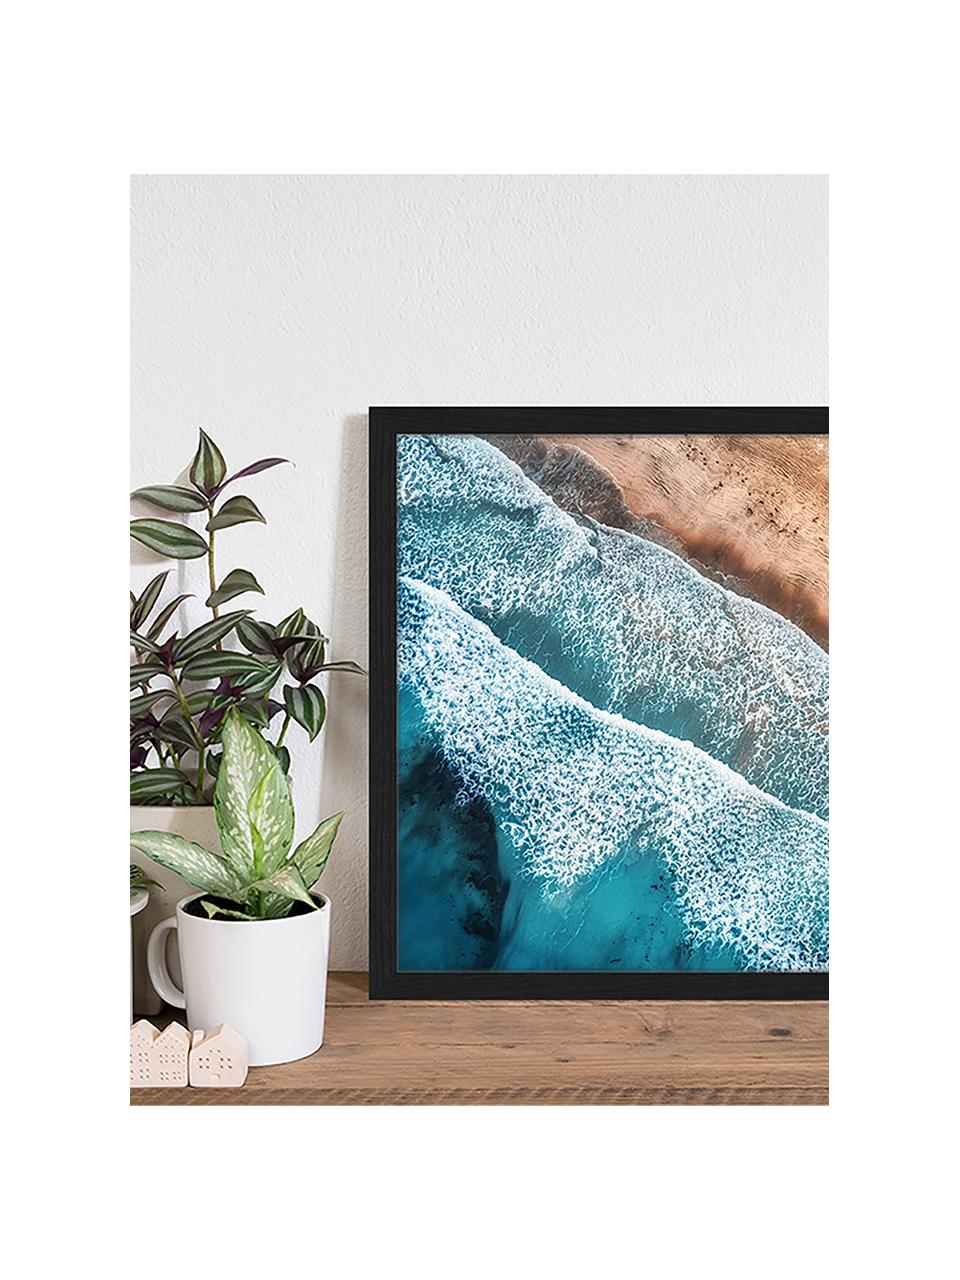 Gerahmter Digitaldruck Aerial View Of Mediterranean Sea, Bild: Digitaldruck auf Papier, , Rahmen: Holz, lackiert, Front: Plexiglas, Mehrfarbig, 53 x 43 cm